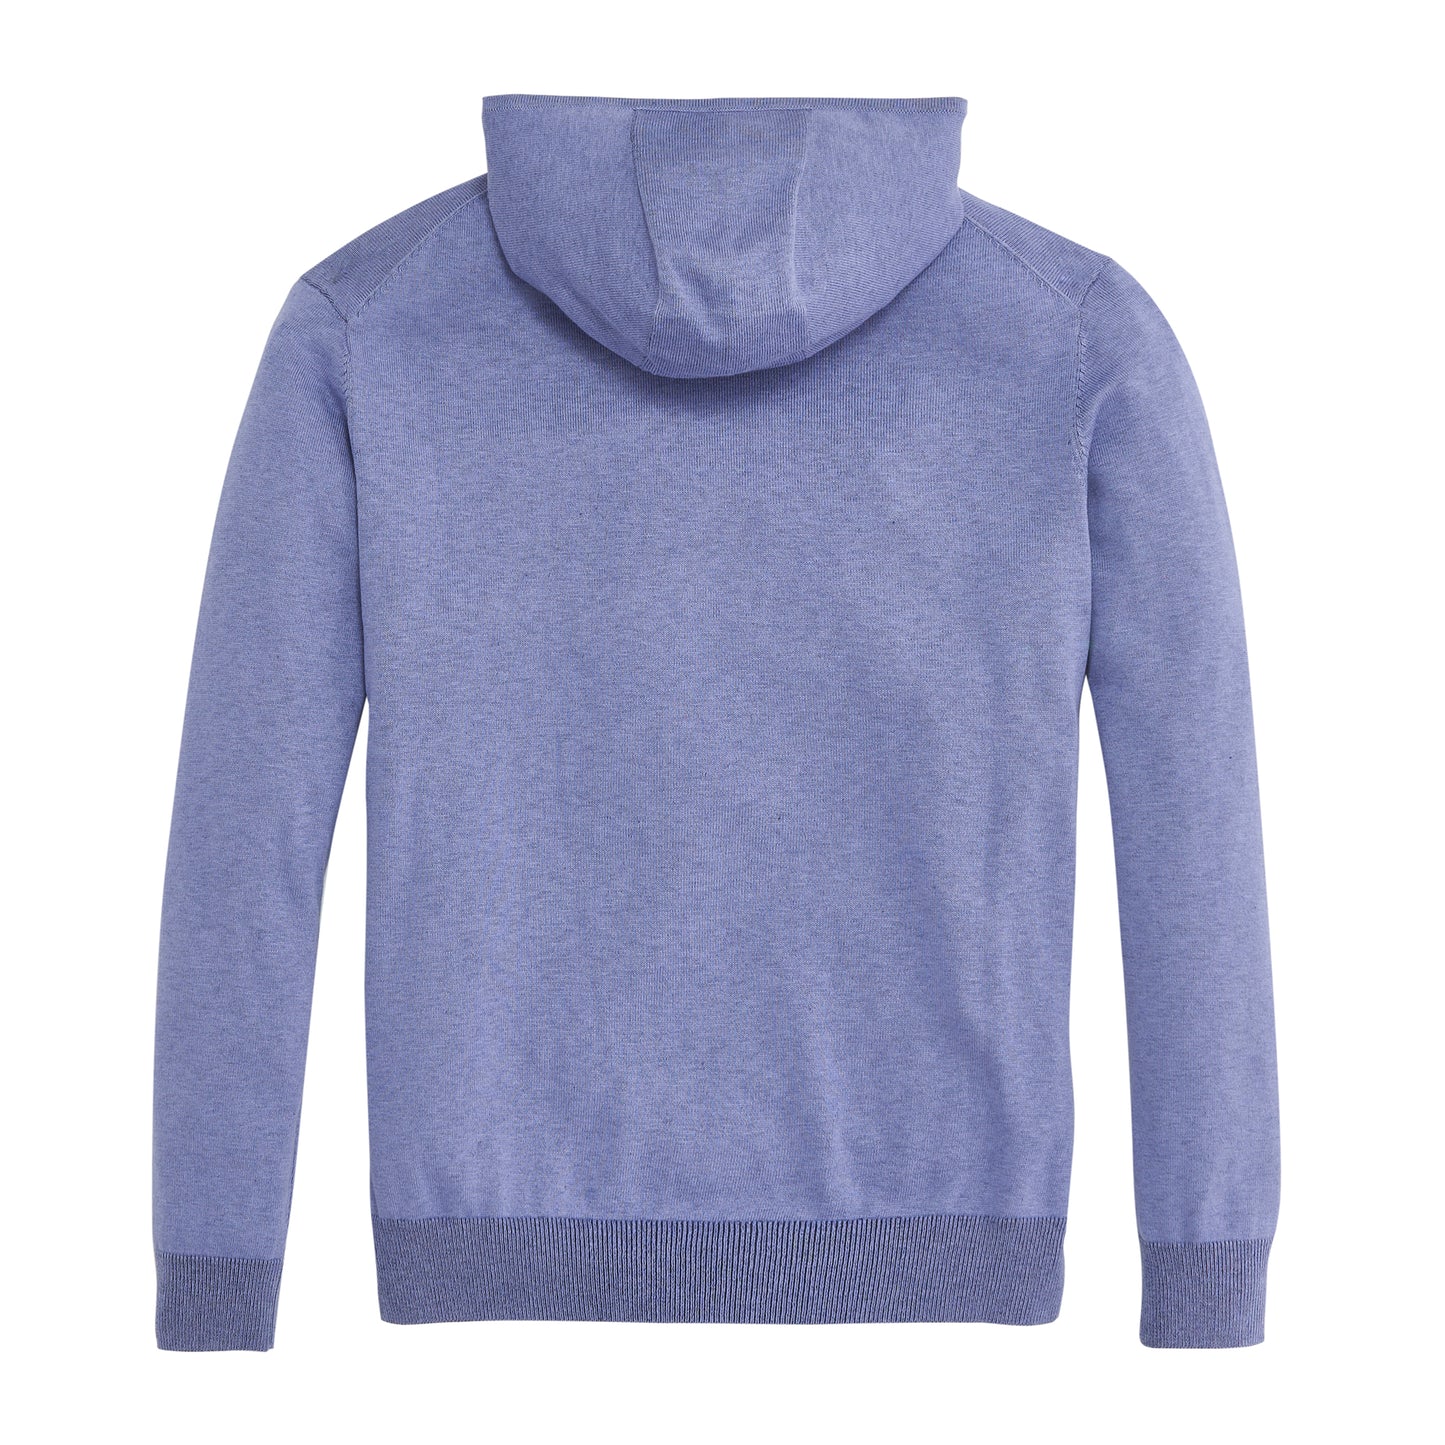 Apex Sweater with Coolmax Hoodie - Daybreak – Onward Reserve